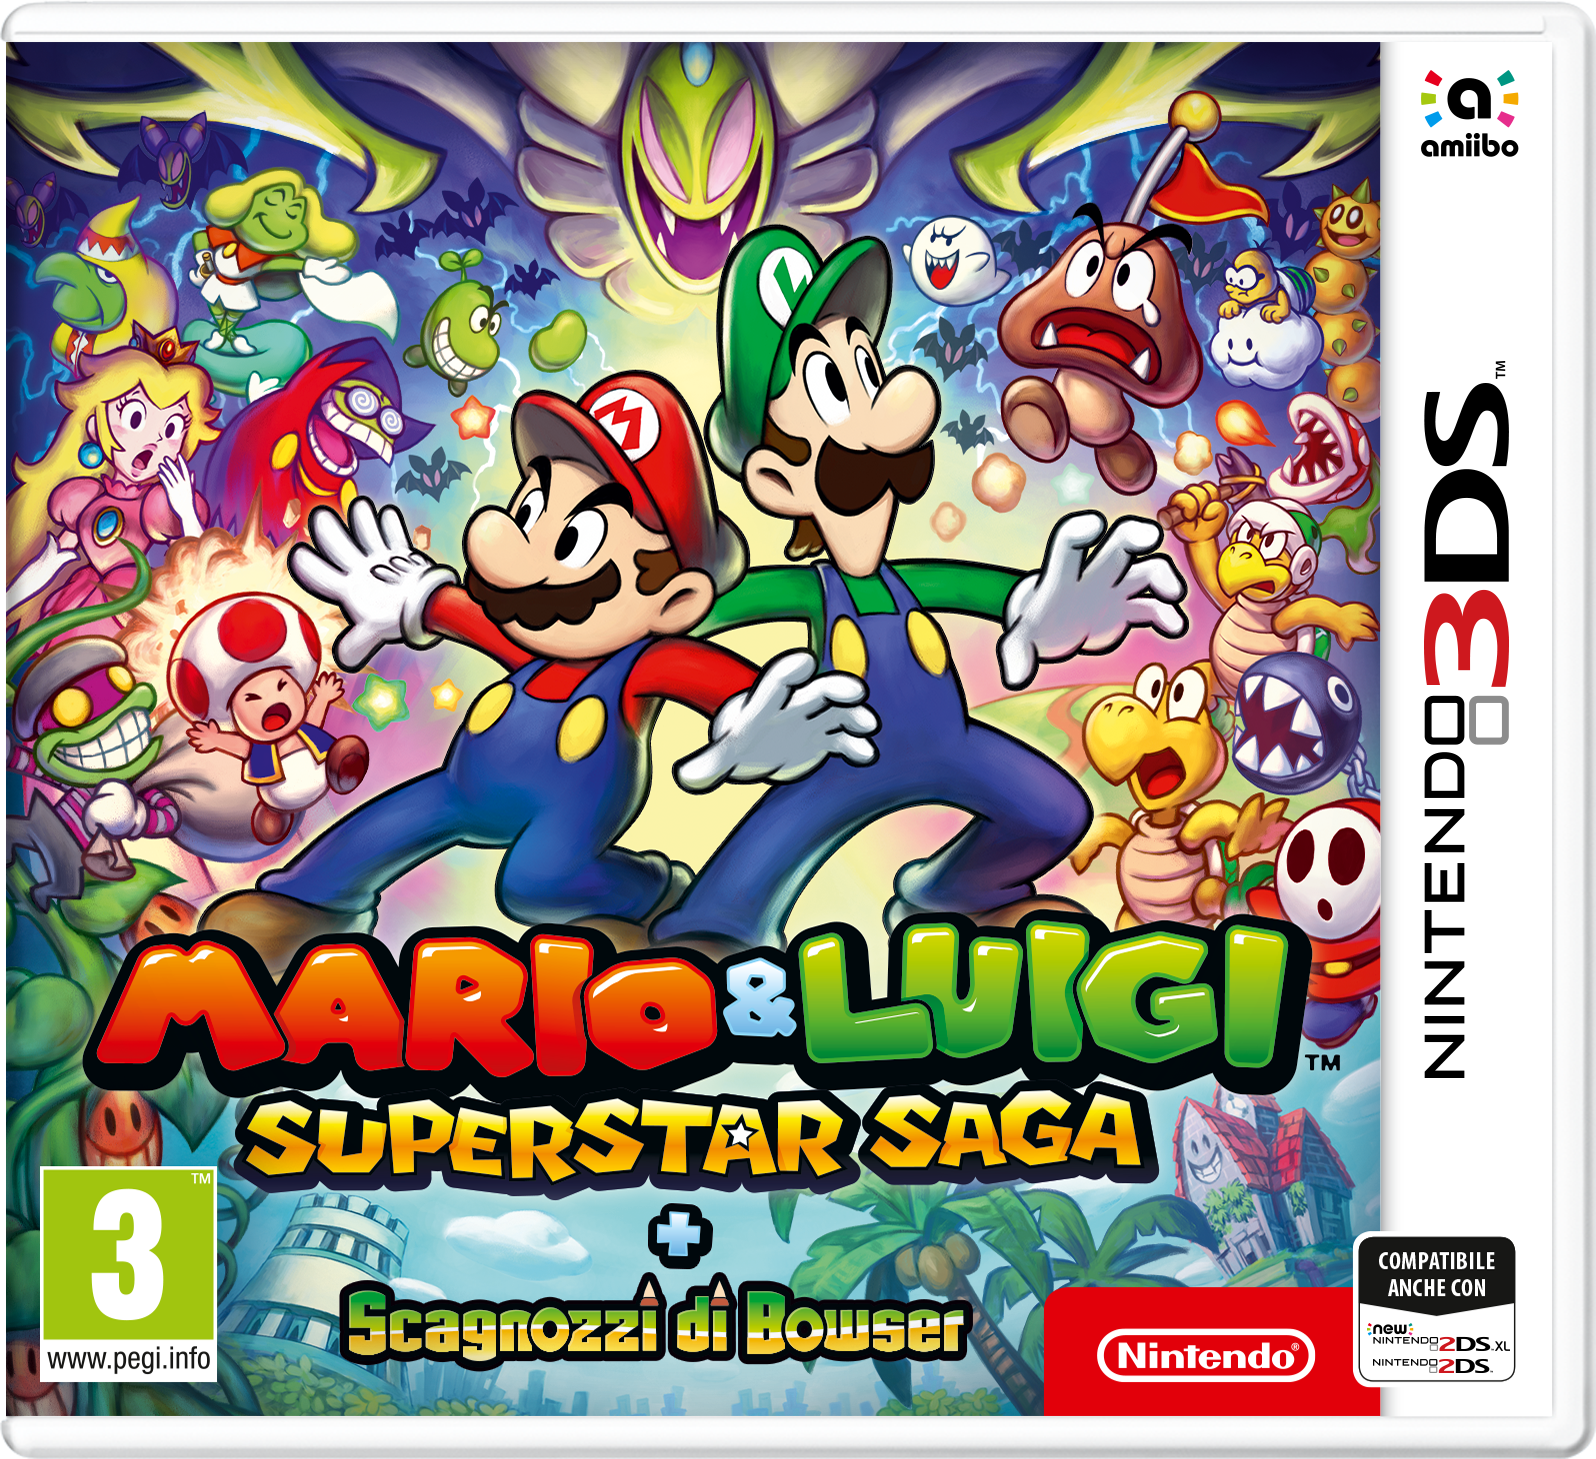 Mario & Luigi Superstar Saga Scagnozzi di Bowser